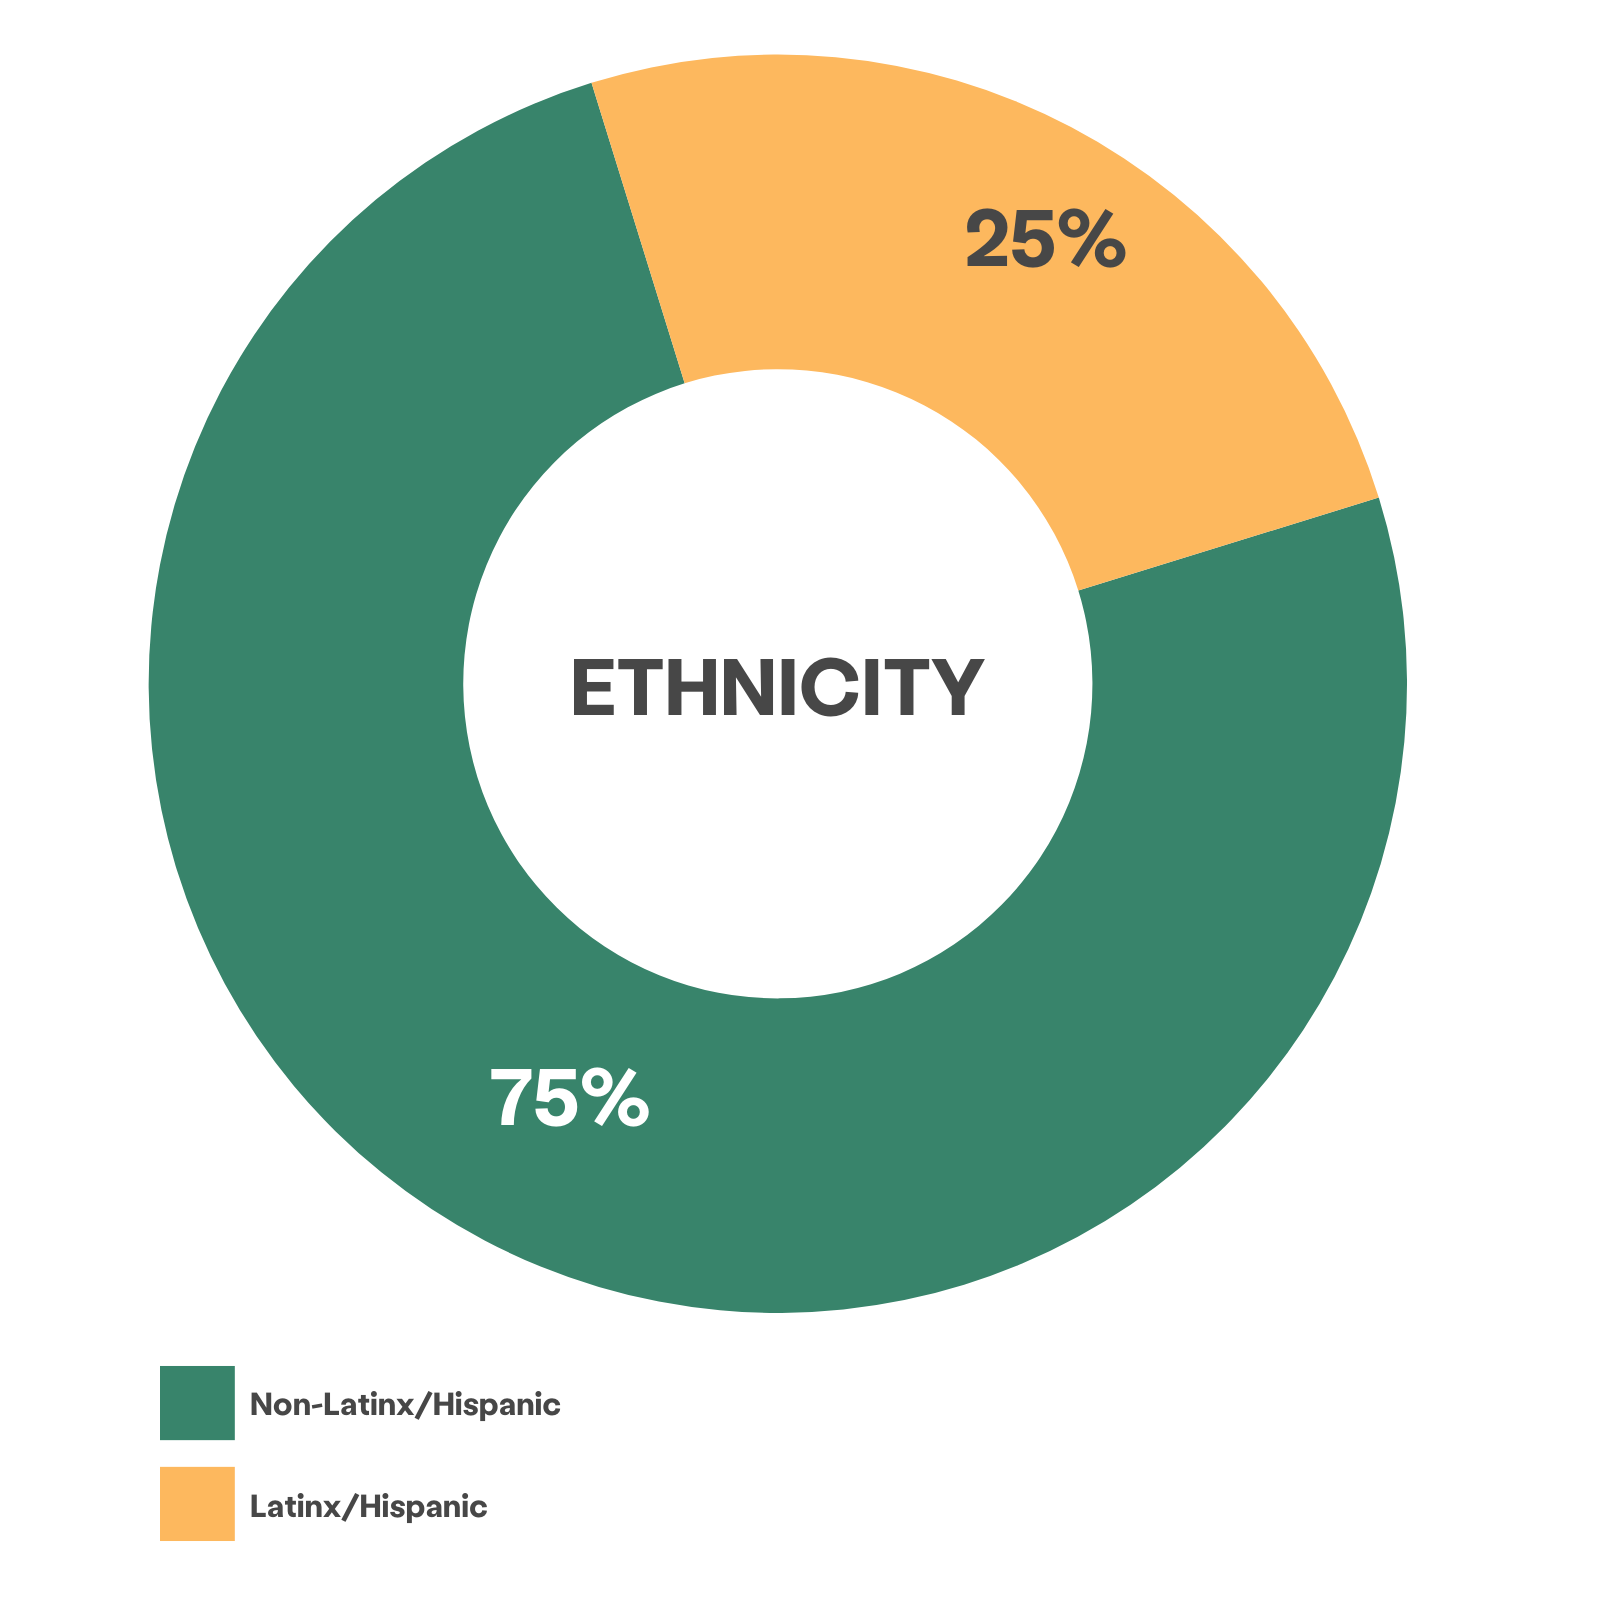 graphique à roues montrant 75% de clients identifiés comme non Latinx/Hispaniques, 25% comme Latinx/Hispaniques